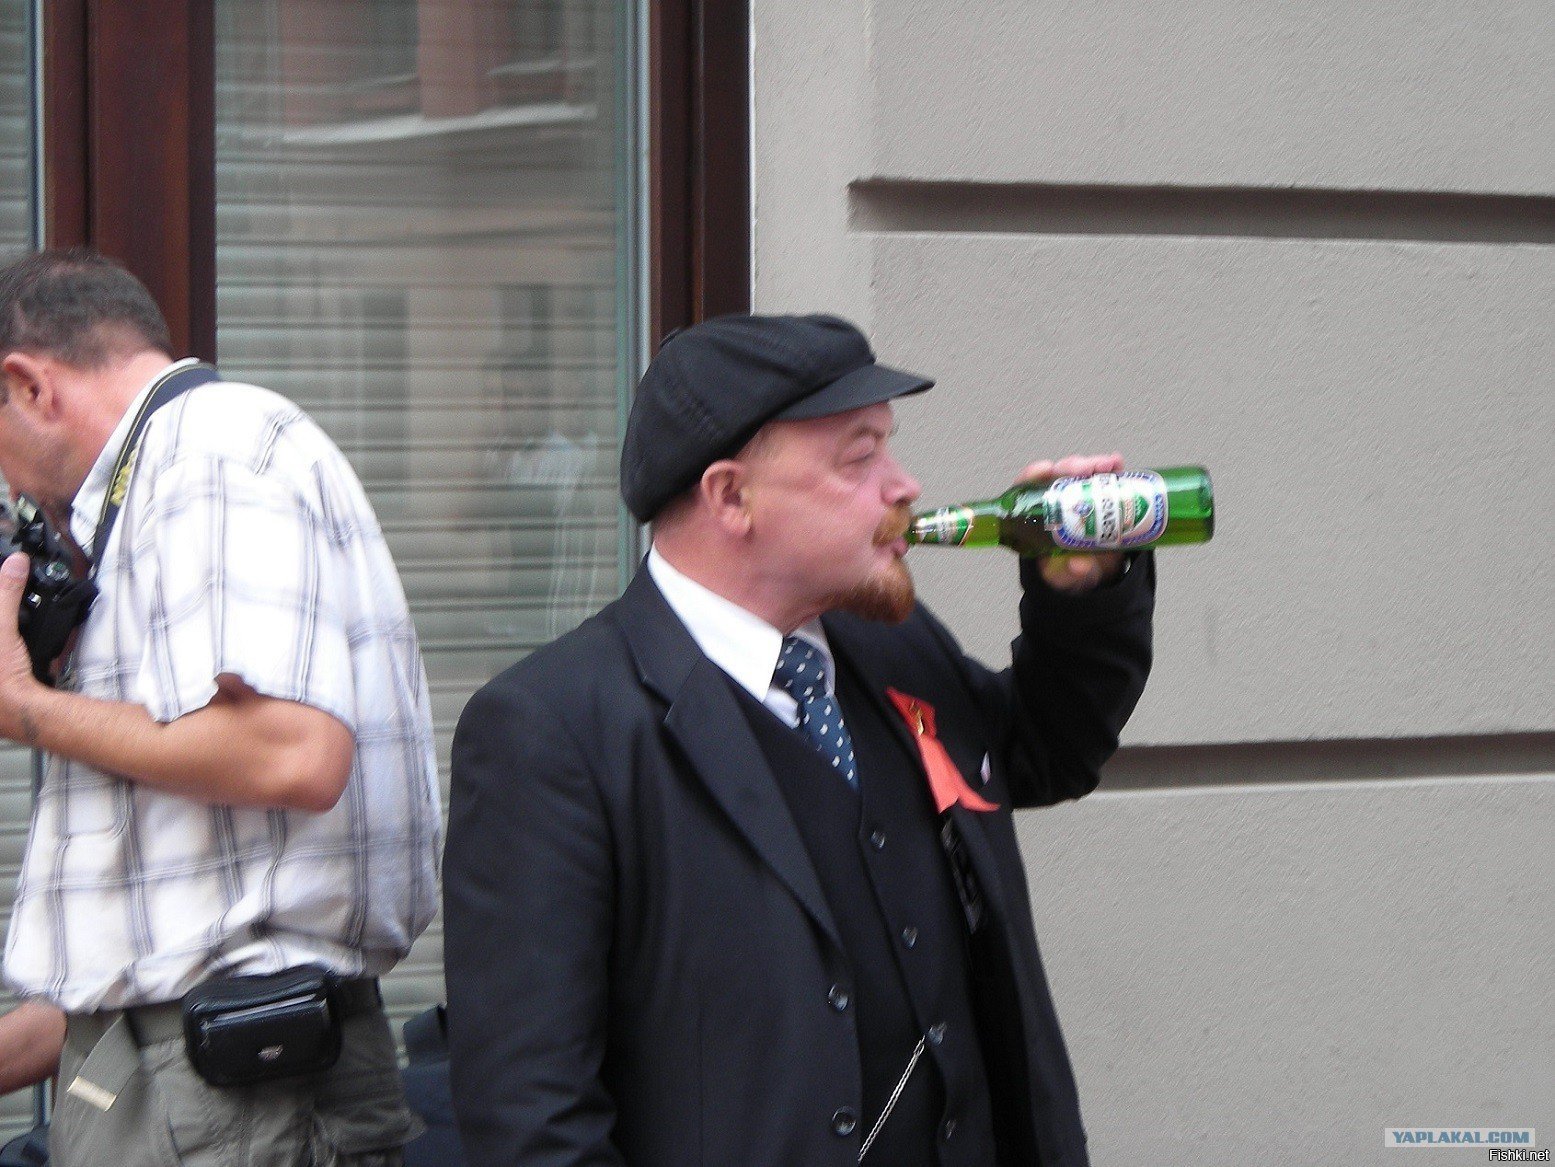 Ленина пивная. Ленин пьет пиво. Ленин с пивом. Алкаш с пивом.